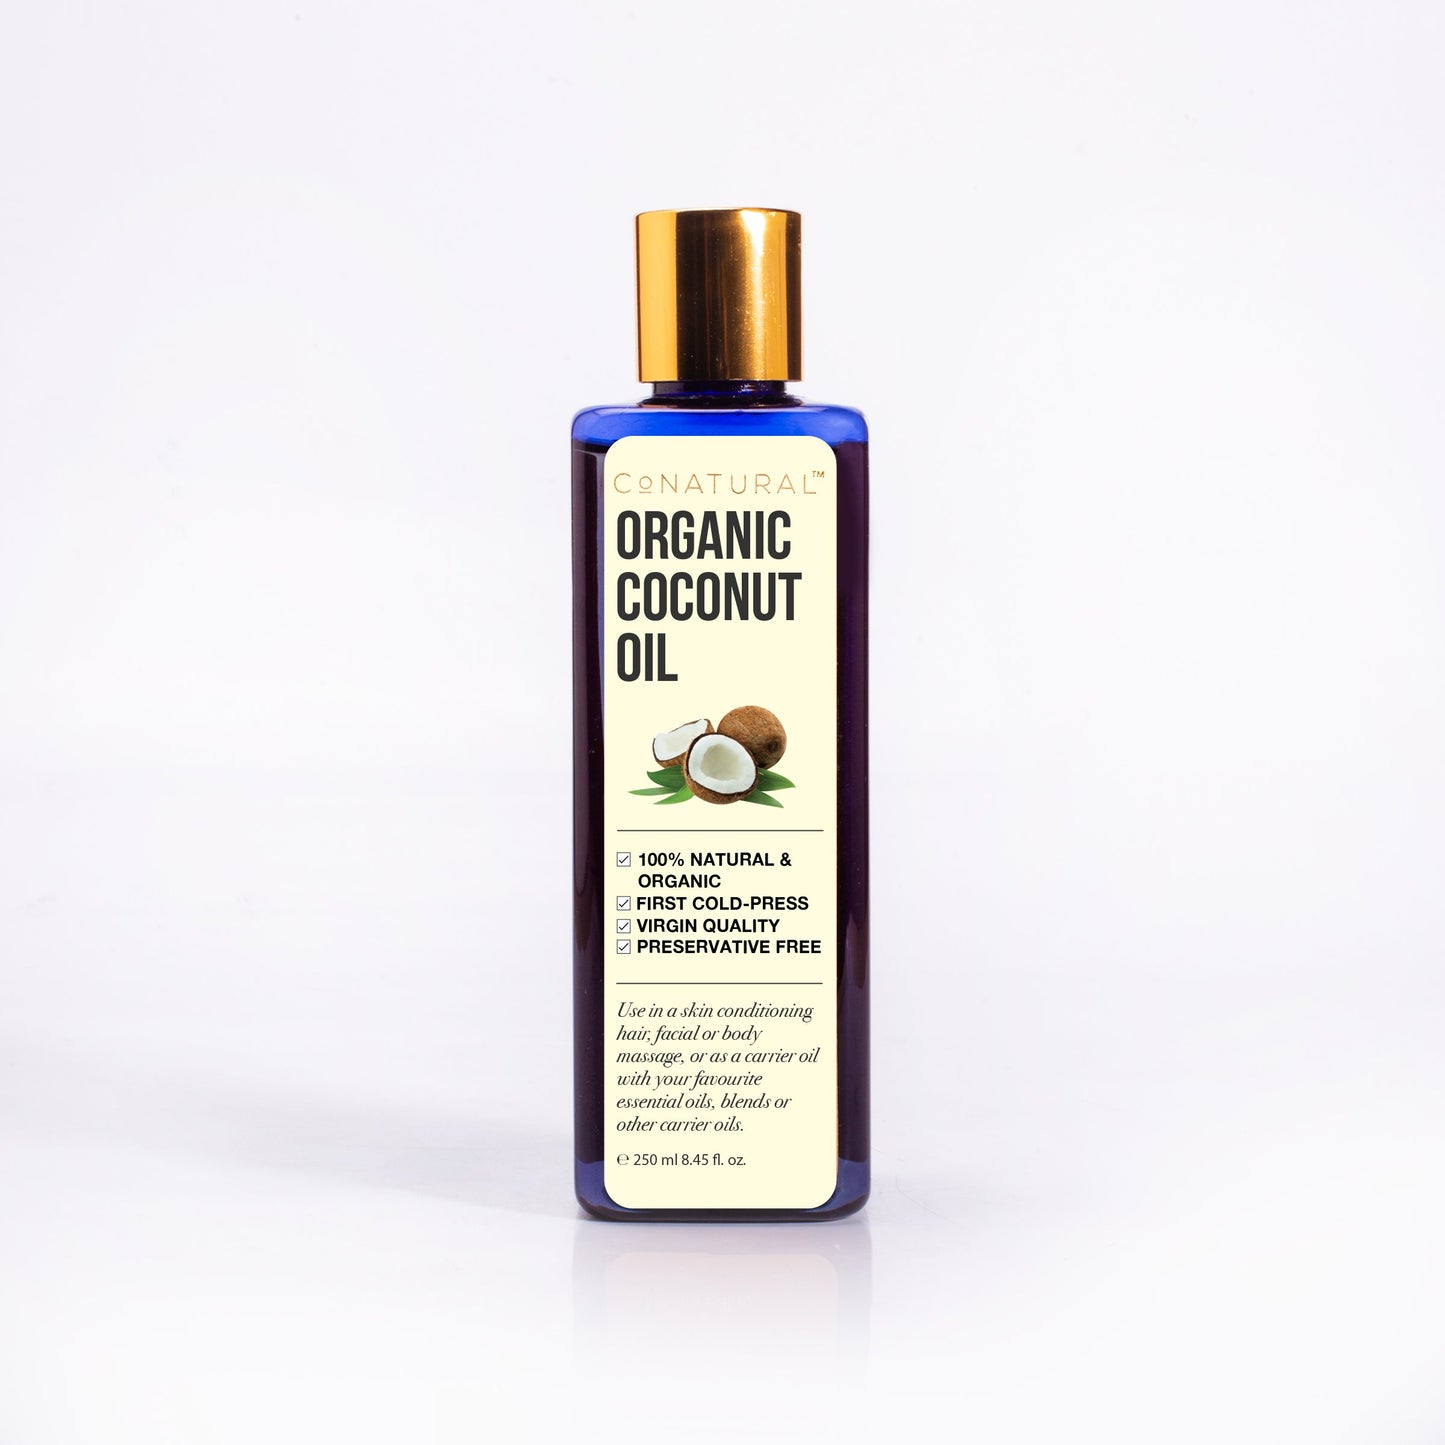 CoNatural Organic Coconut Oil 120ml